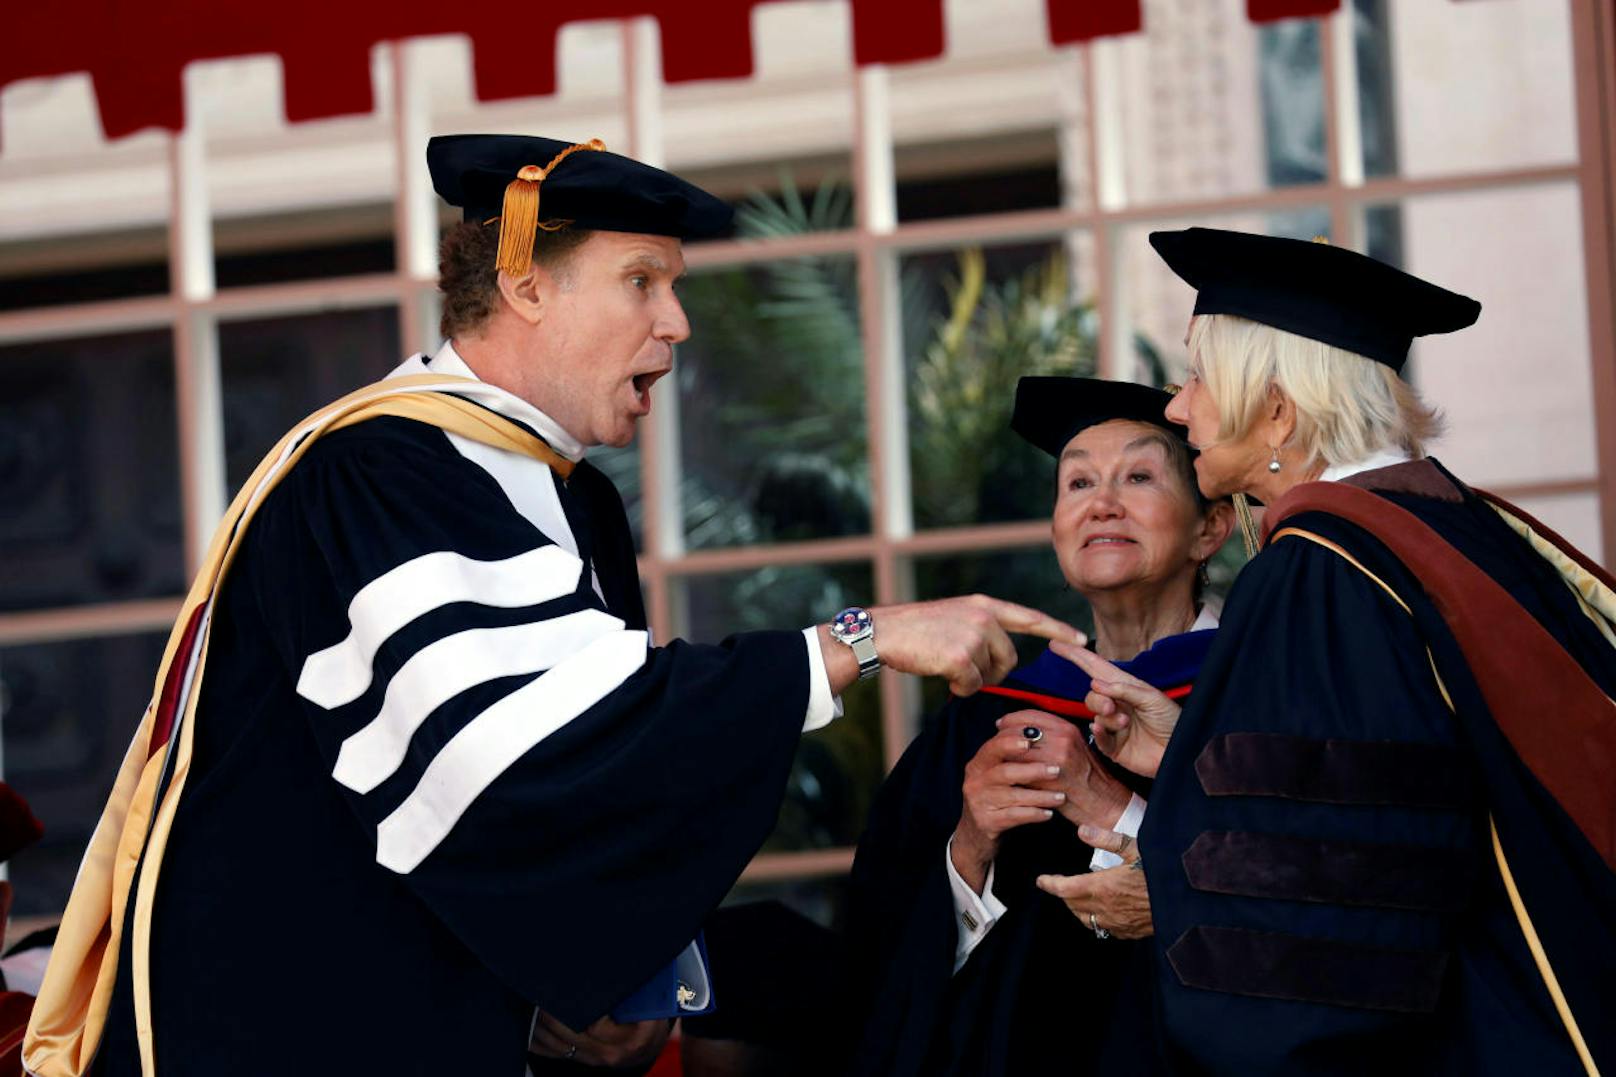 14.05.2017: Will Ferrell und Helen Mirren wurden von der USC mit einem Ehrendoktorat ausgezeichnet. Der Komiker hielt dabei die Abschlussrede und sang auch das Lied "I Will Always Love You" von Whitney Houston.